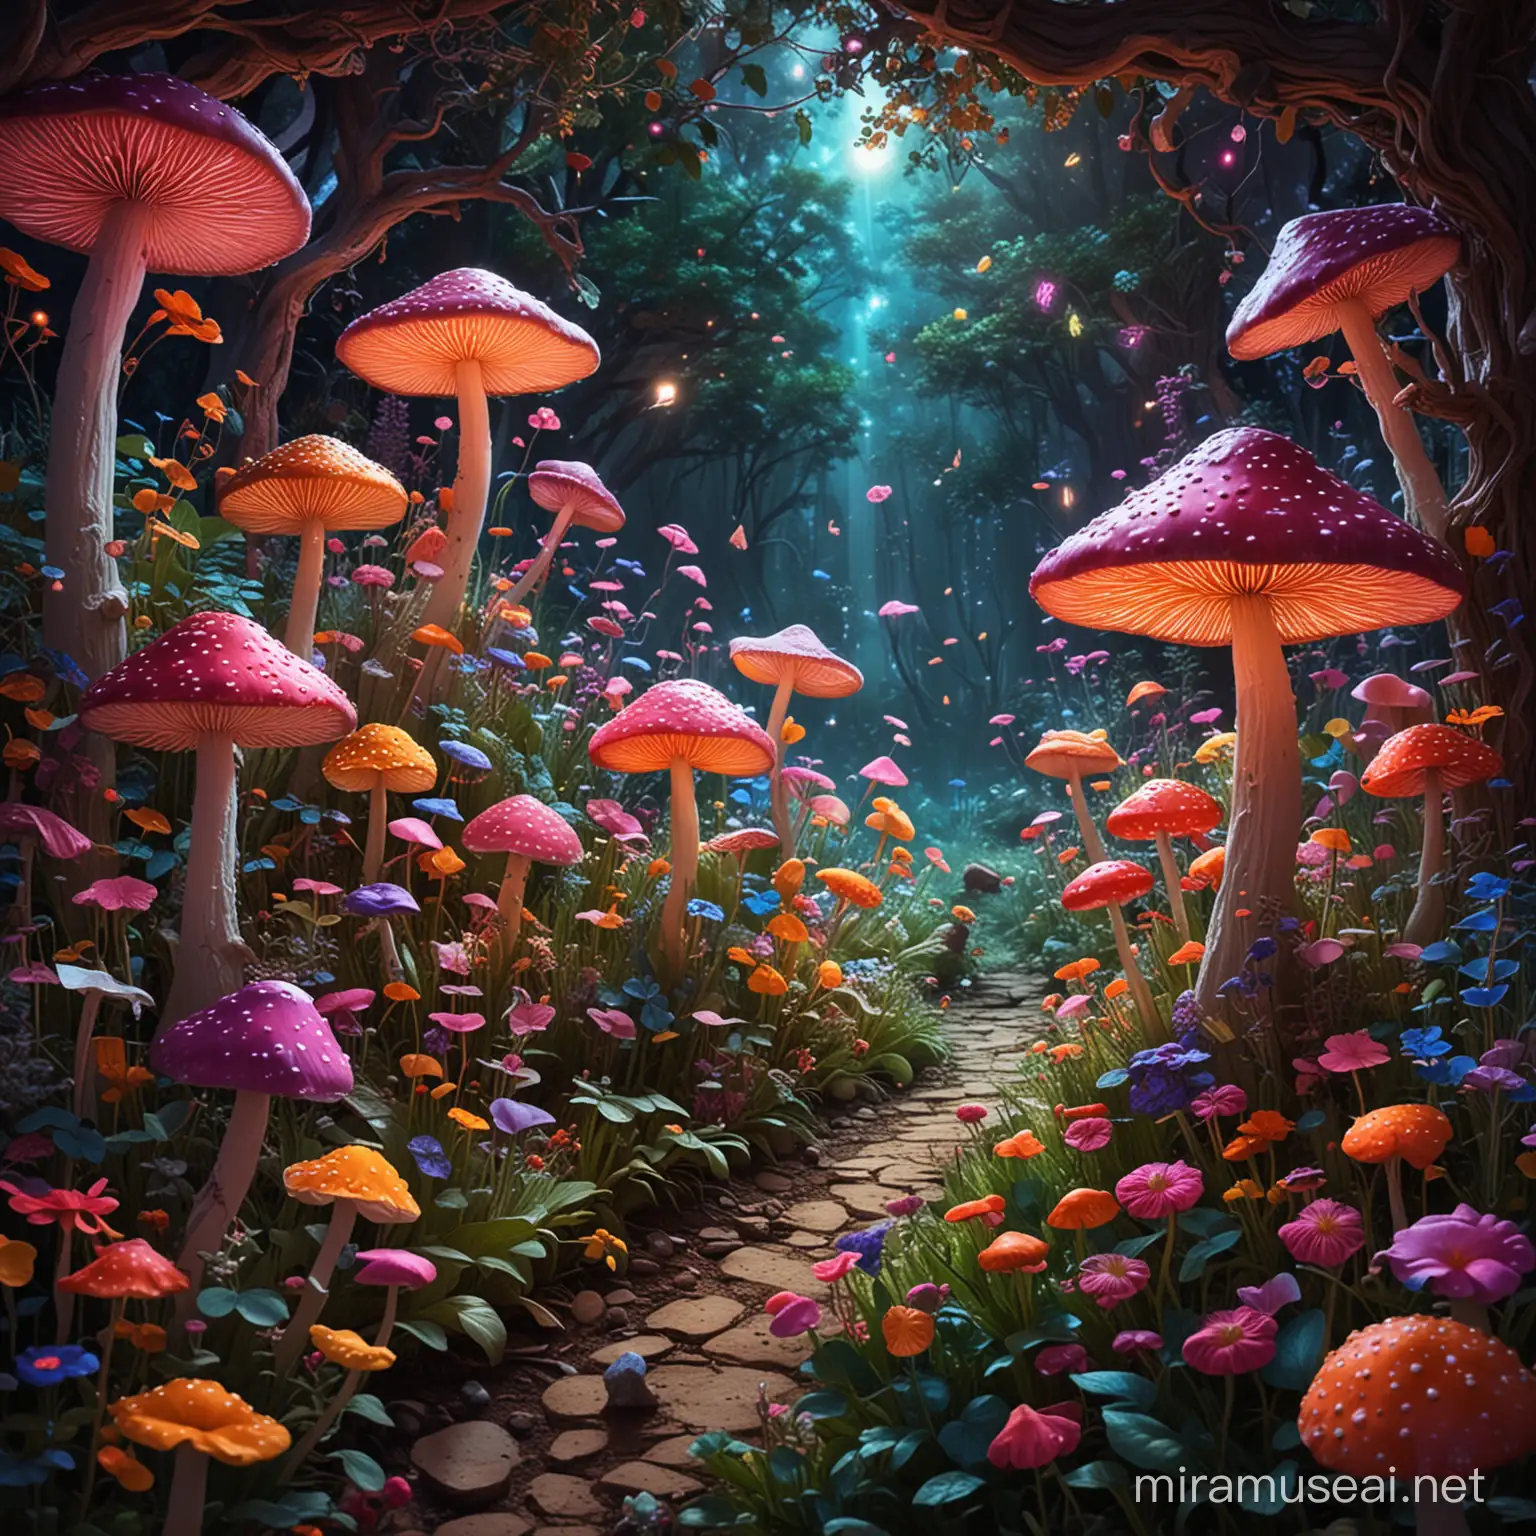 Euphoric Fairies Dancing in Neon Mushroom Garden